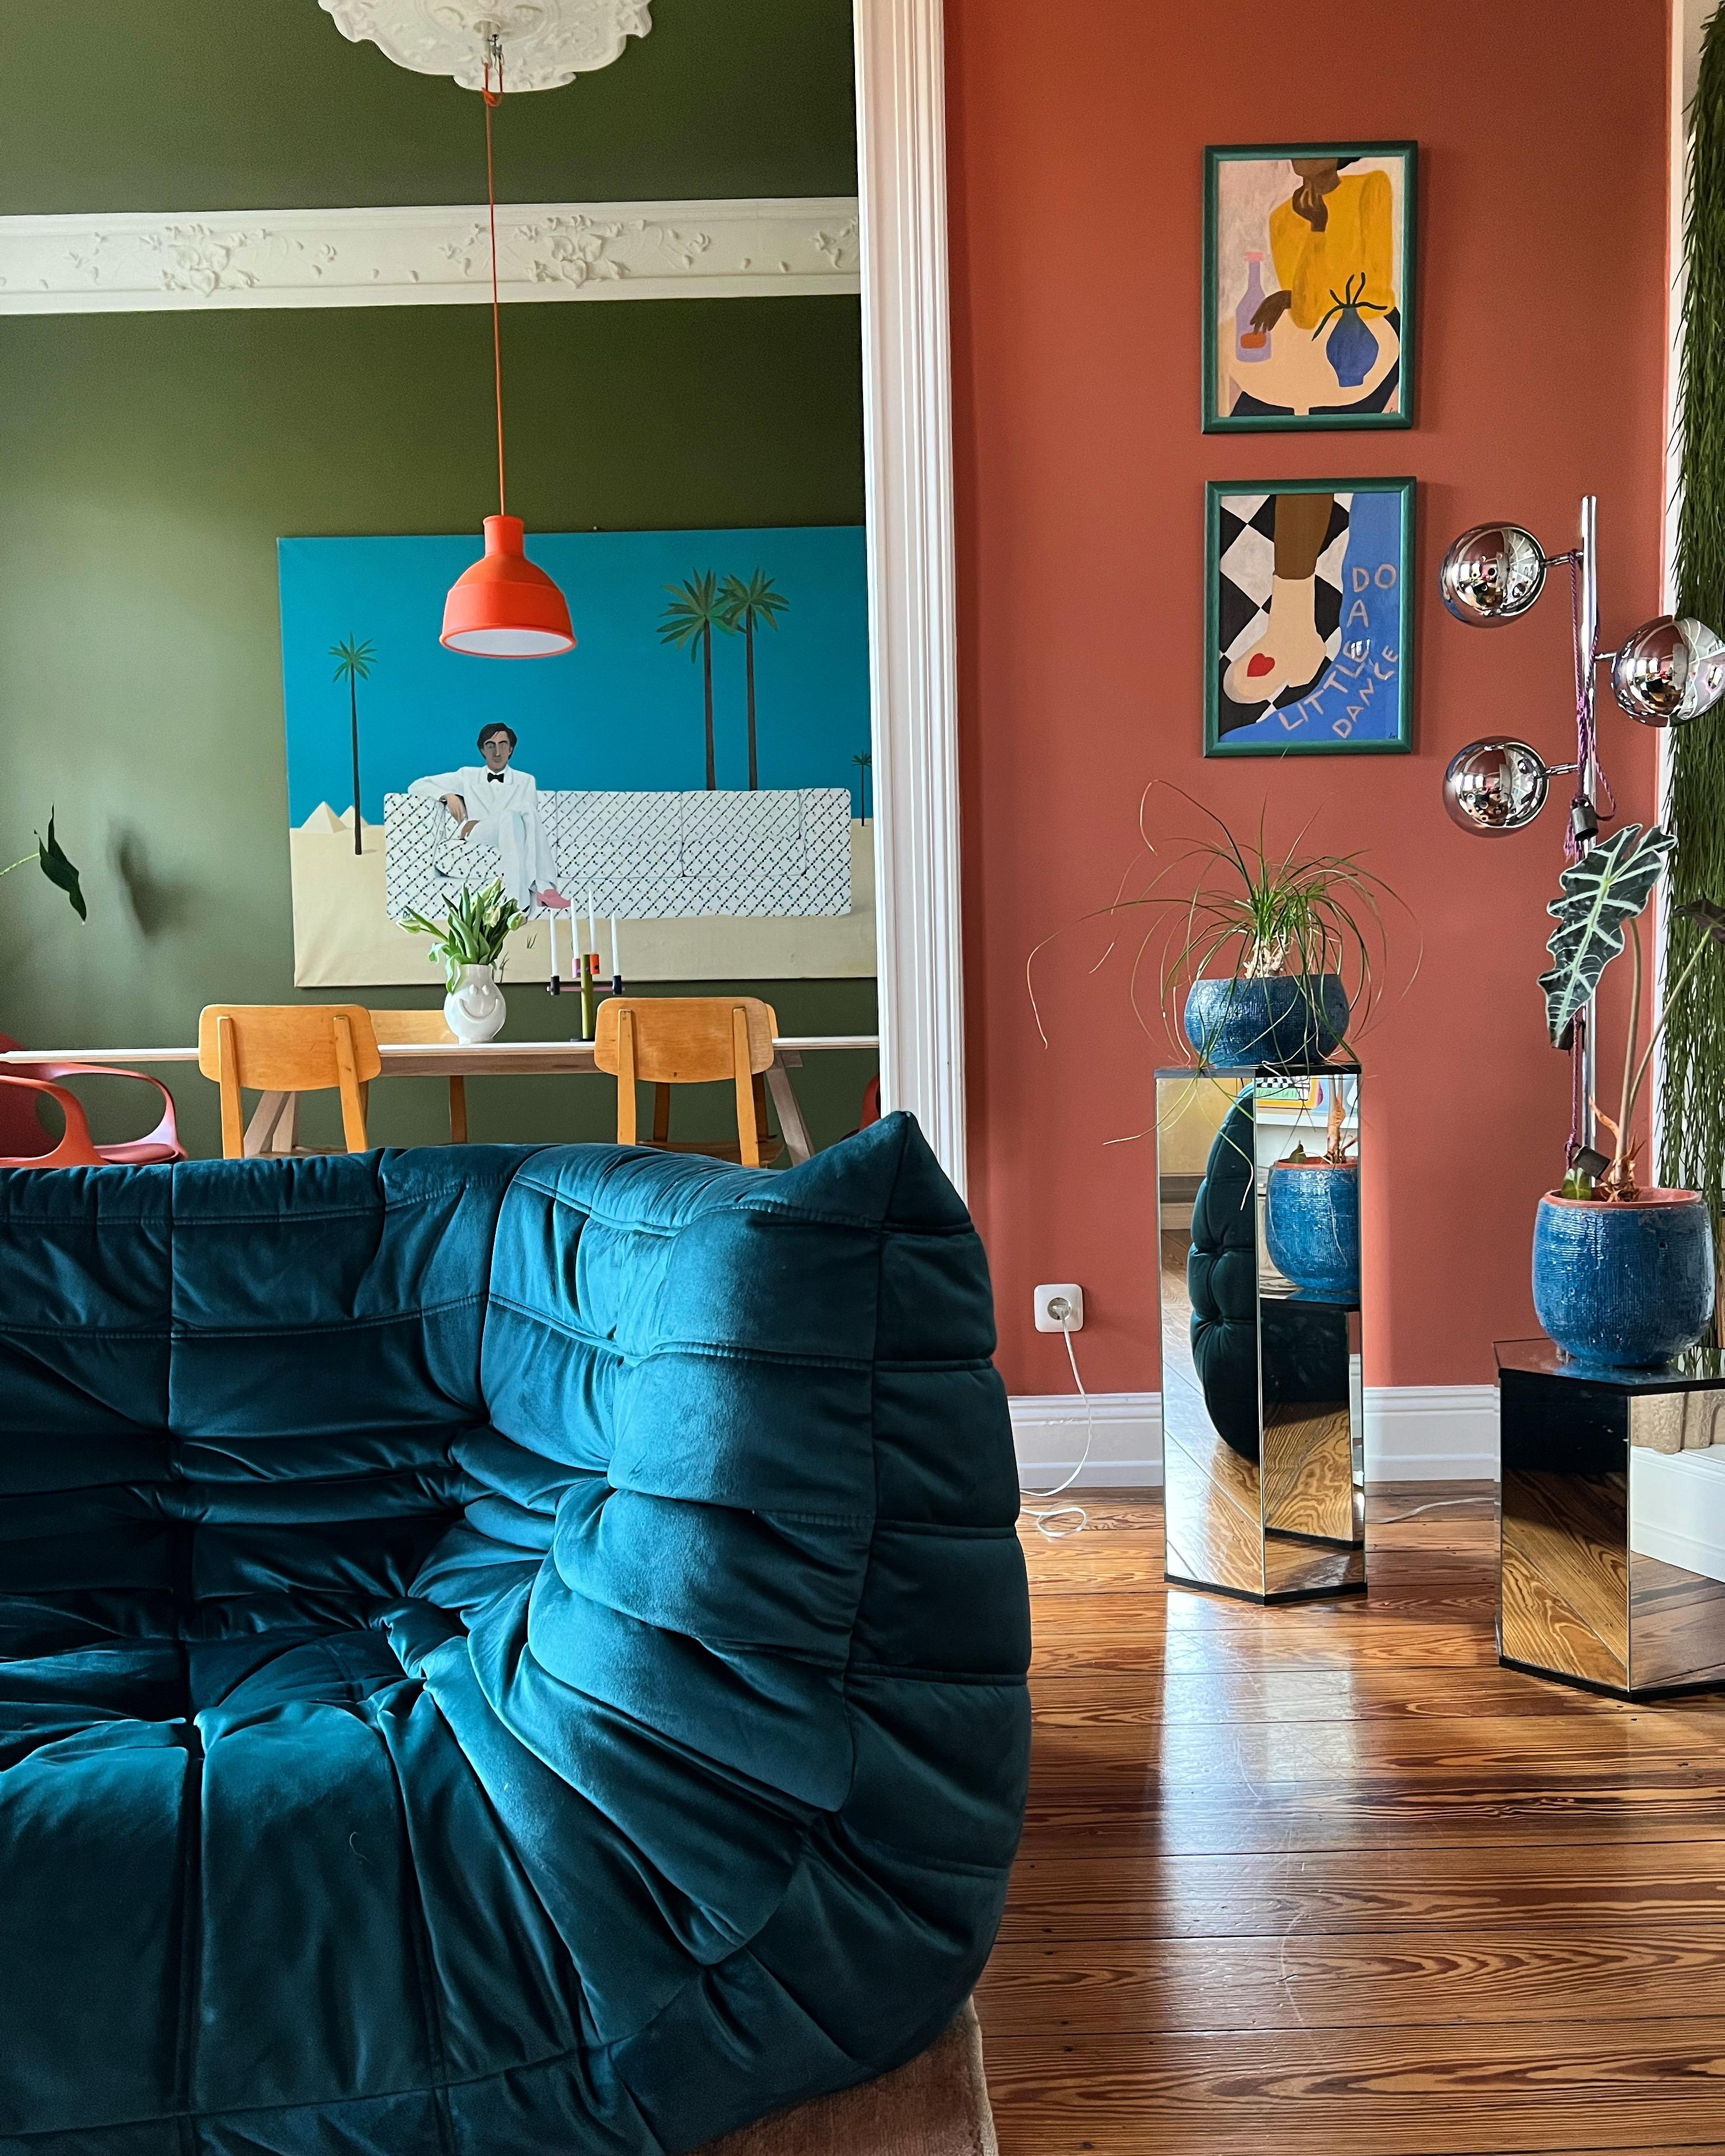 Kunstverliebt.

#wohnzimmer #altbau #esszimmer #couchliebt #colorfulinterior #kunst #togoliebe 